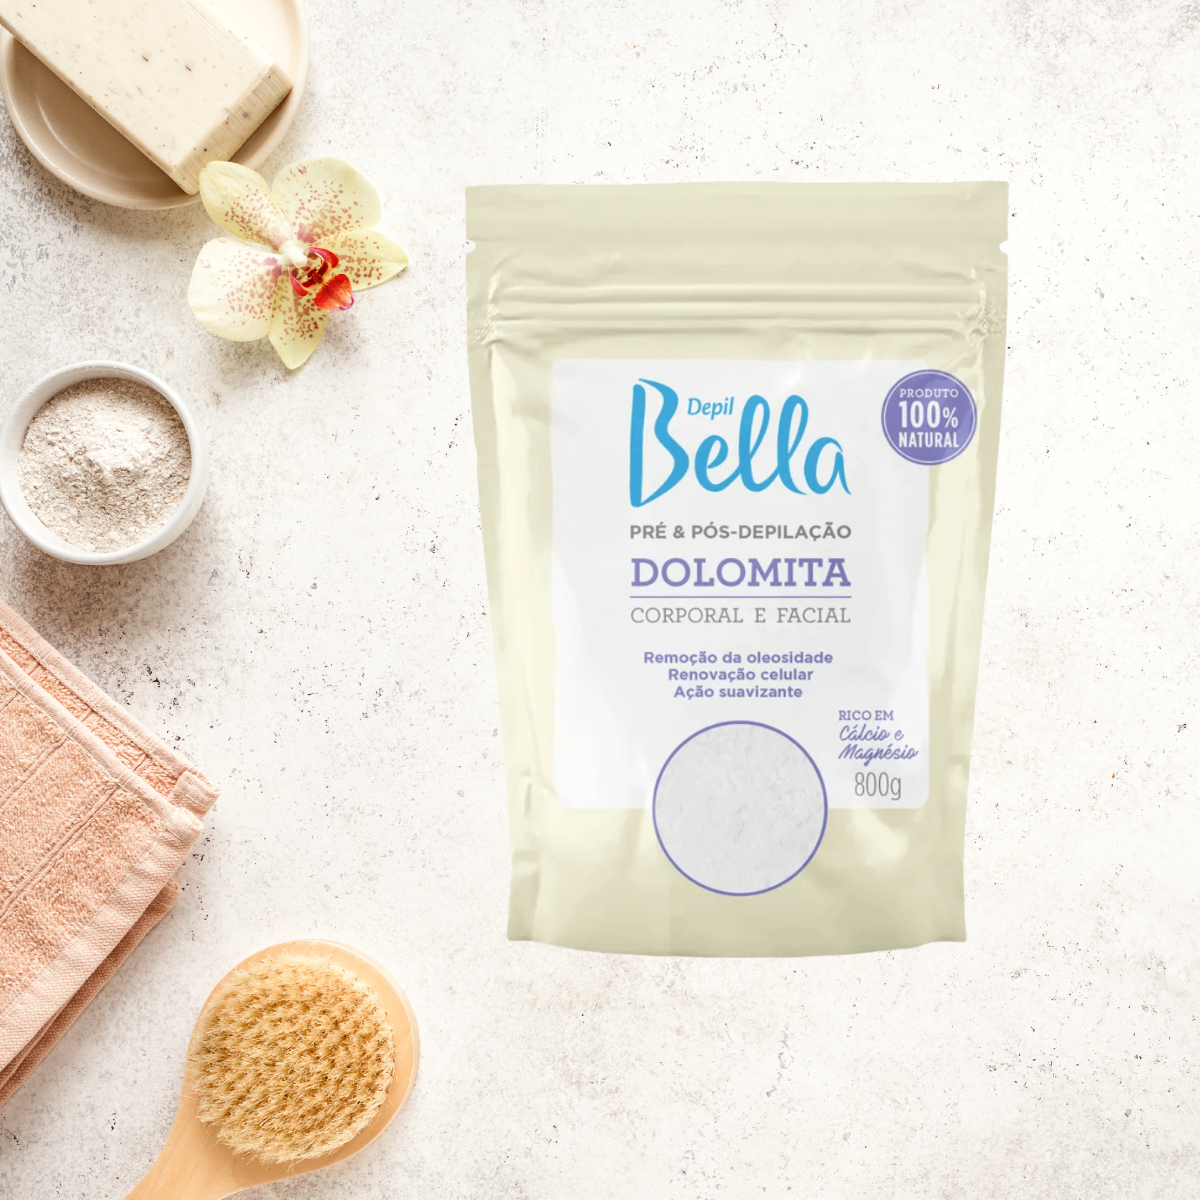 Depil Bella Bundle 2 Cera Natural de Azúcar de Cuerpo Completo Depilación, y 1 Dolomita en Polvo, 100% natural, vegana, para todo tipo de piel. - compañía depilatoria